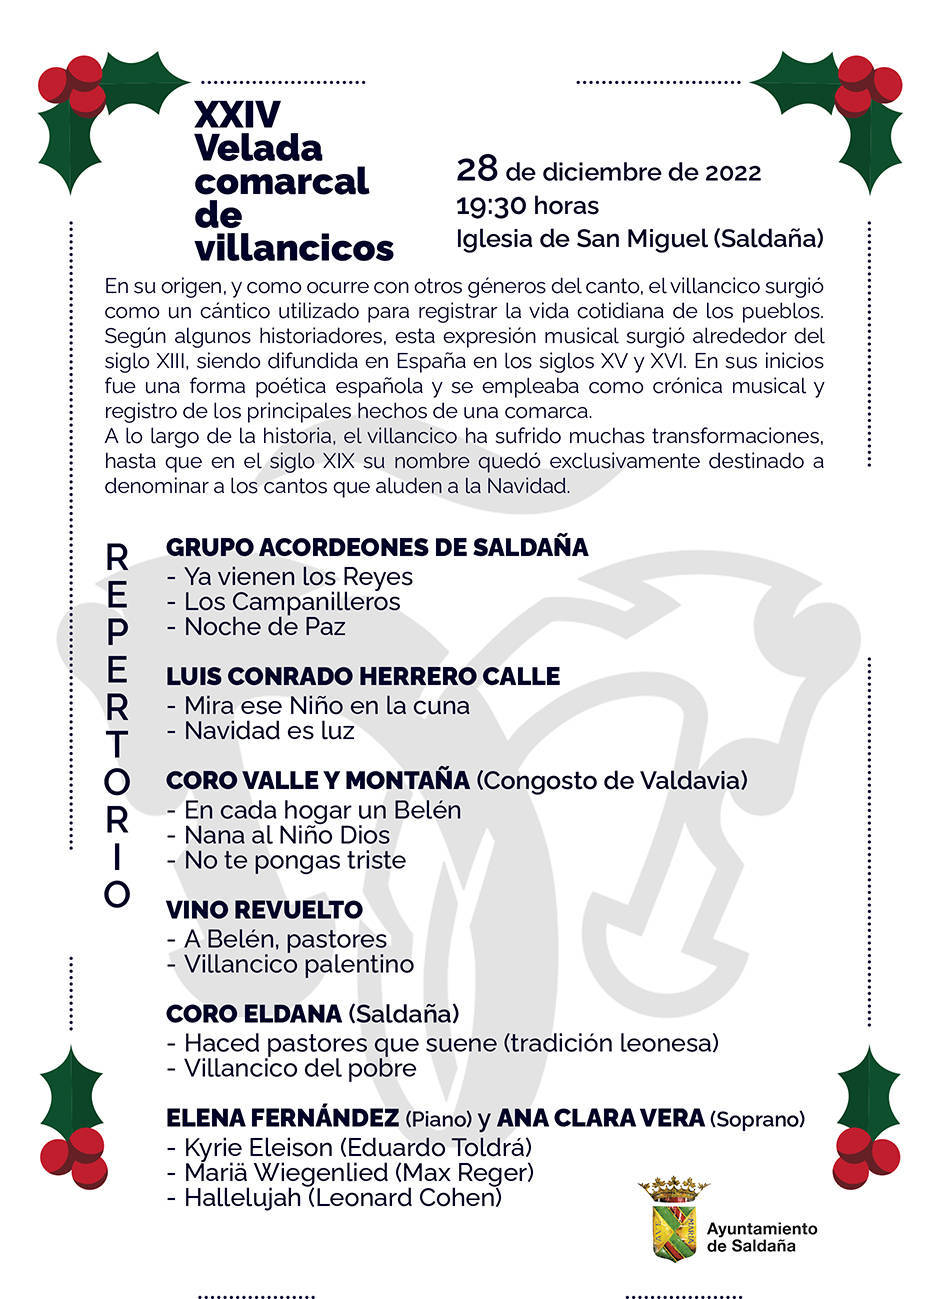 XXIV Velada Comarcal de Villancicos - Saldaña (Palencia)